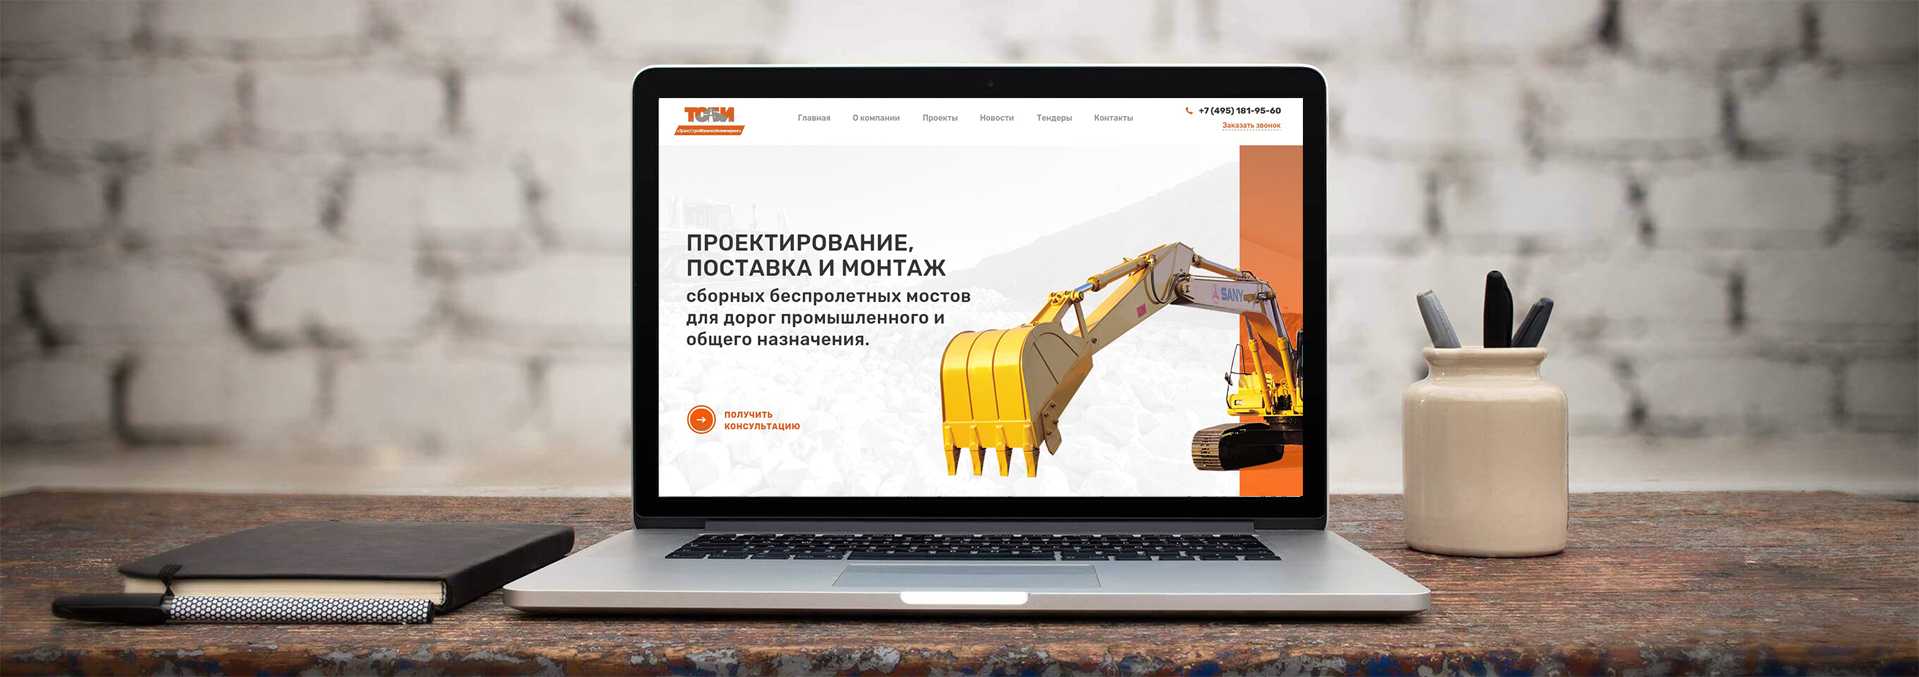 Разработка сайтов москва бюджетной